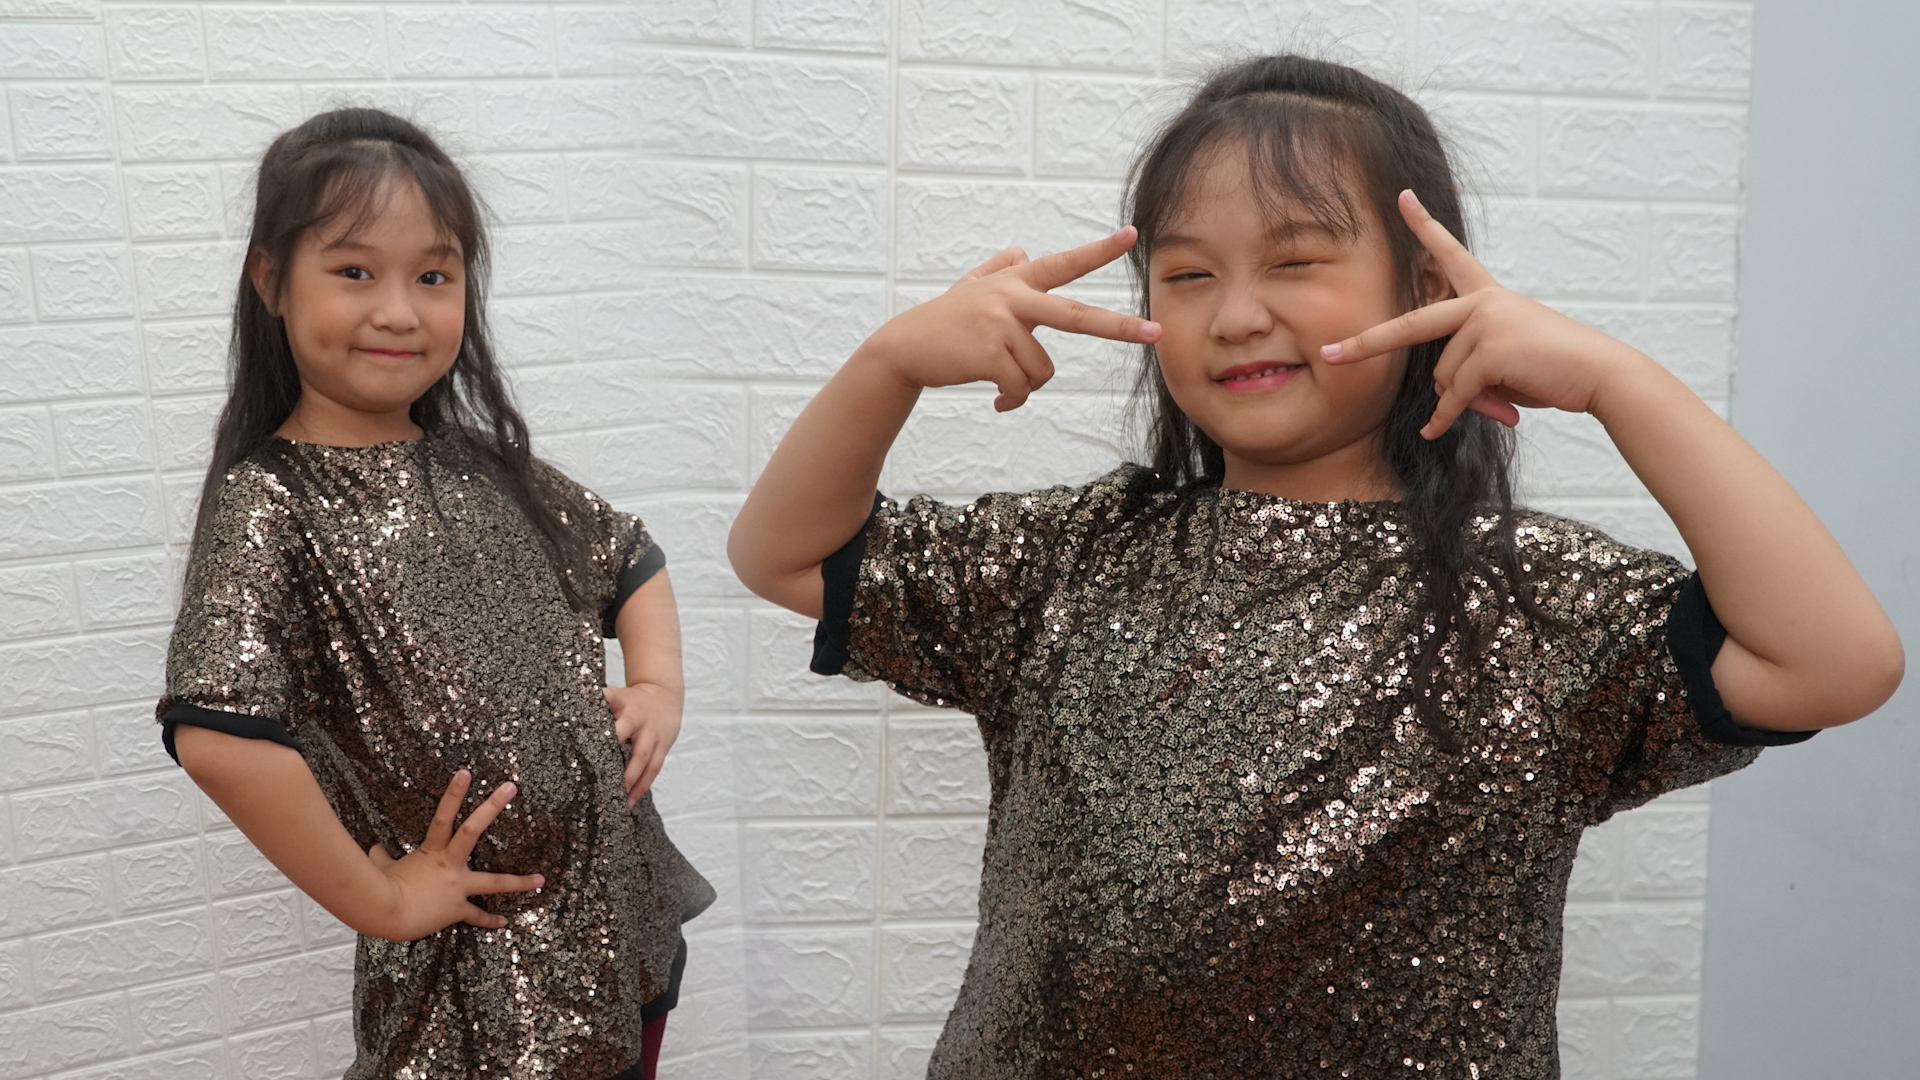 'Em nhảy Ghen Cô Vy' hút hàng nghìn bài thi, sân chơi bổ ích của gia đình - ảnh 4